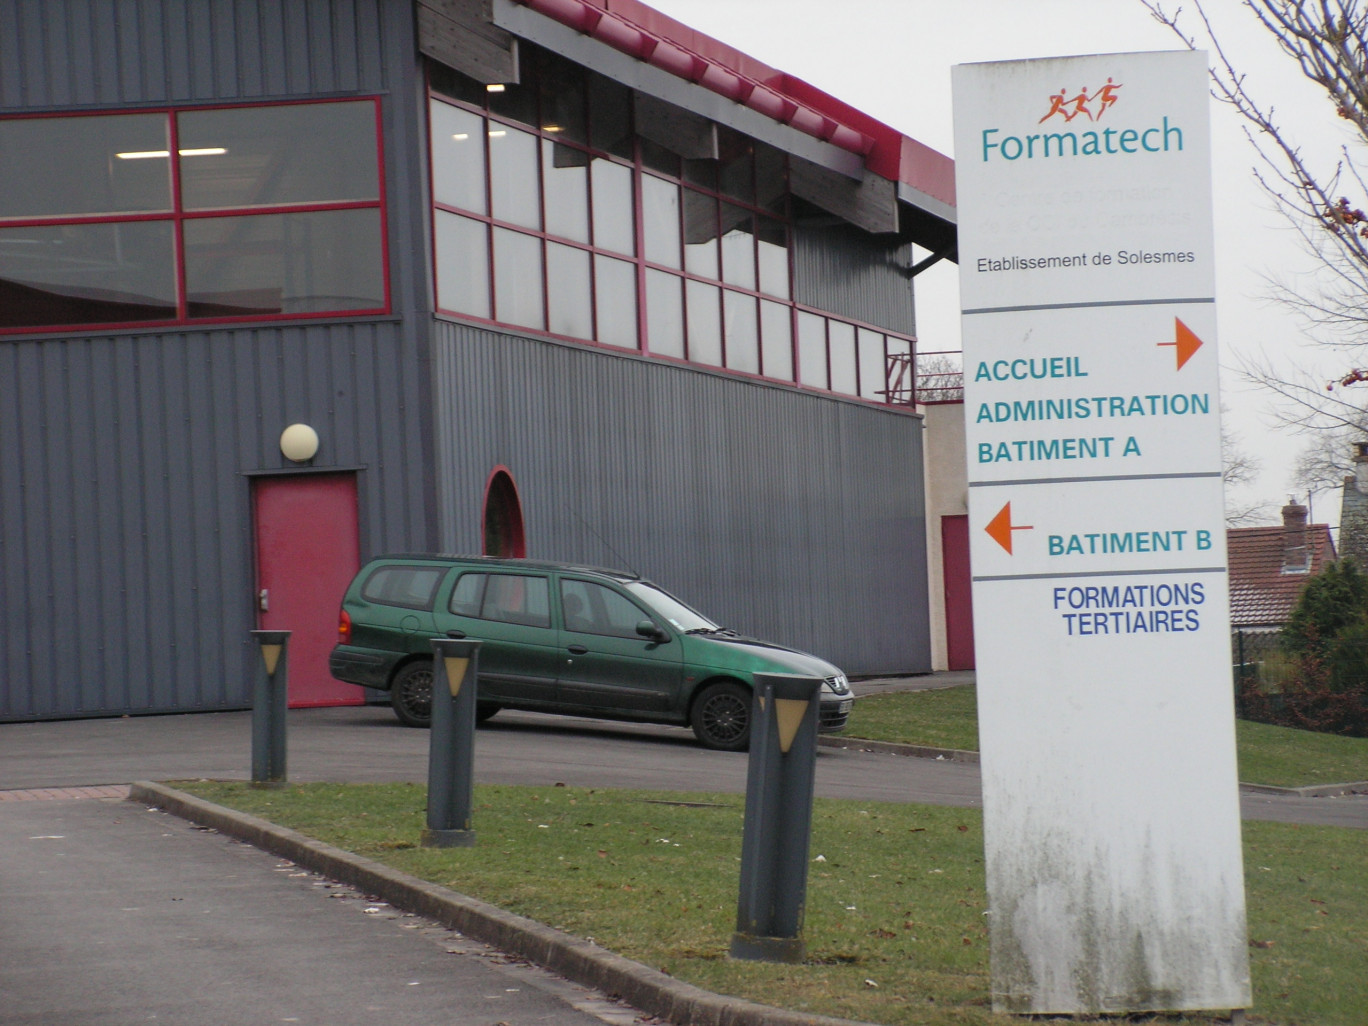 Le centre Formatech de Solesmes a fêté ses 30 ans en 2009. Que vont devenir bâtiments et outils pédagogiques ? On le saura peut-être en 2013.